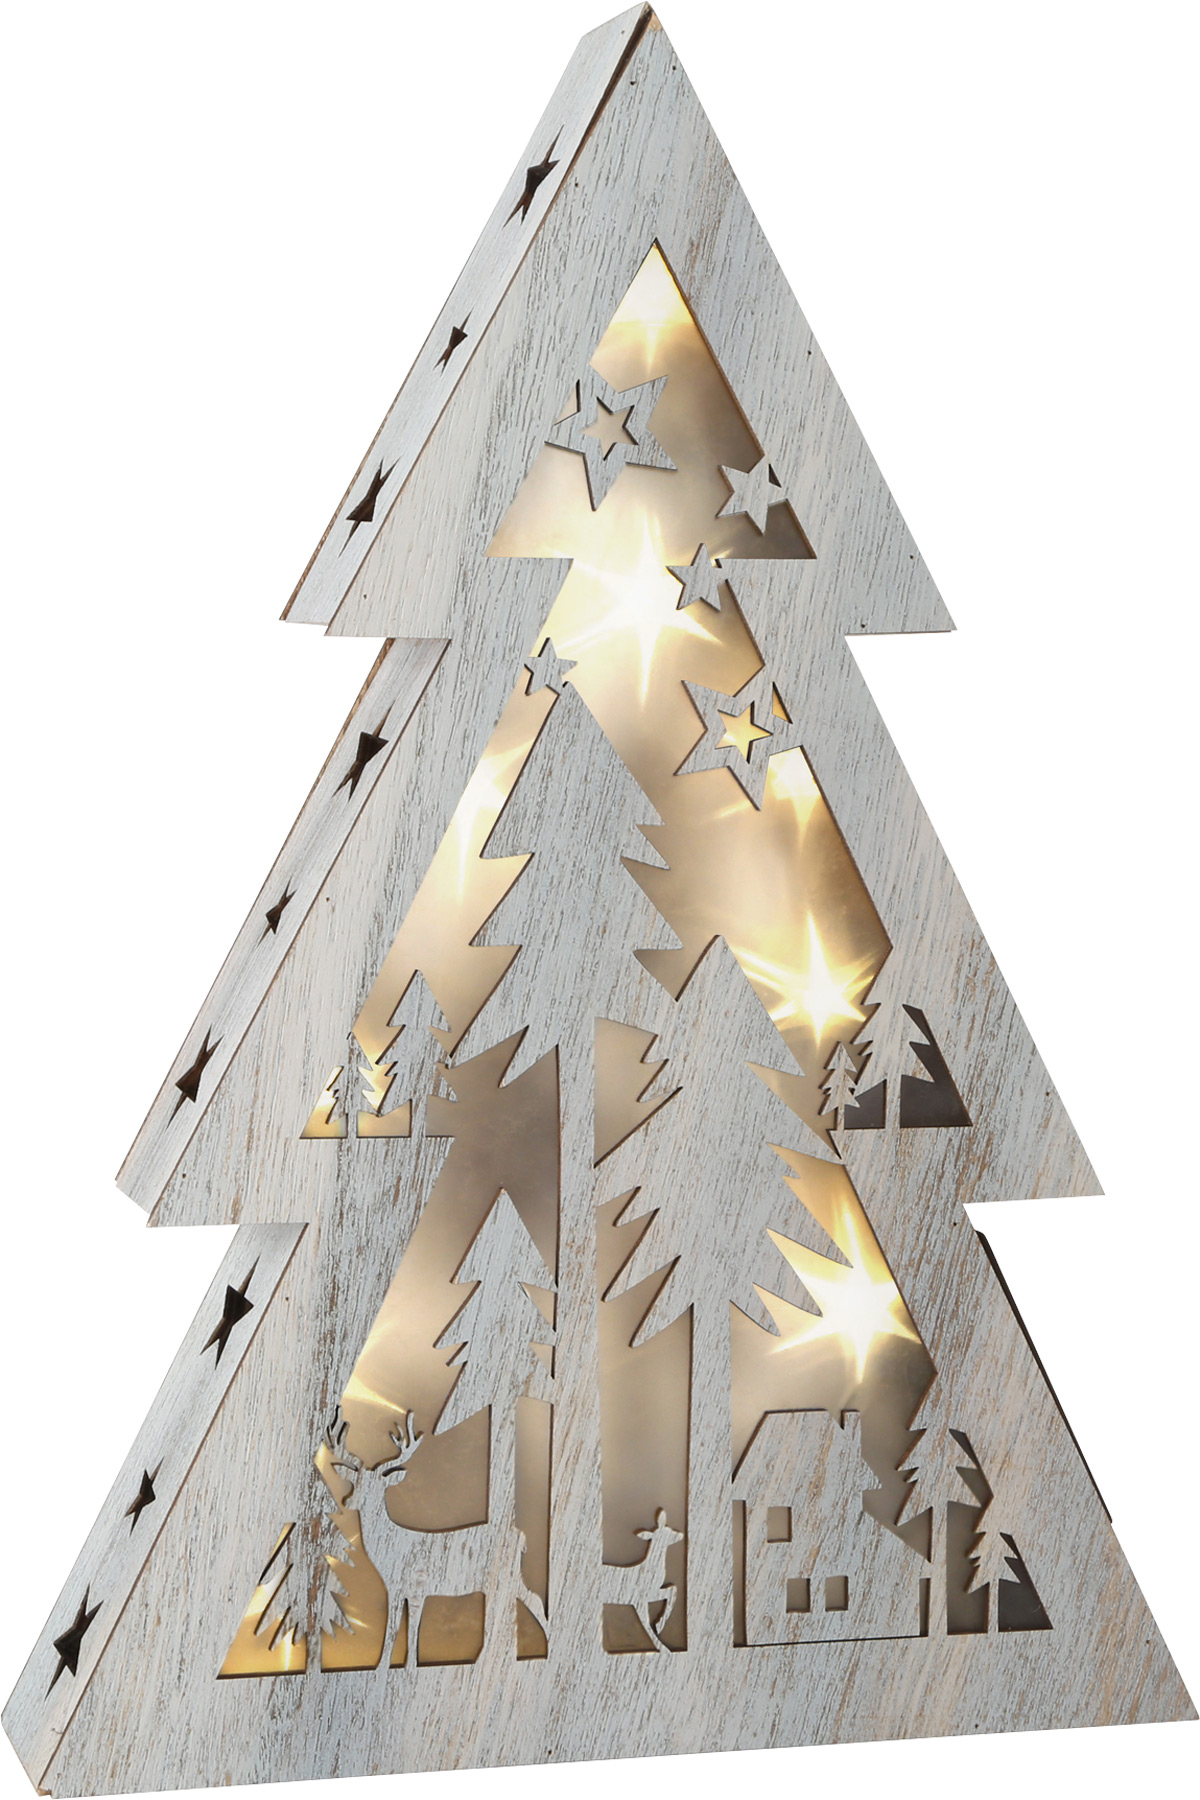 Illuminated Shabby Chic Christmas Tree, small